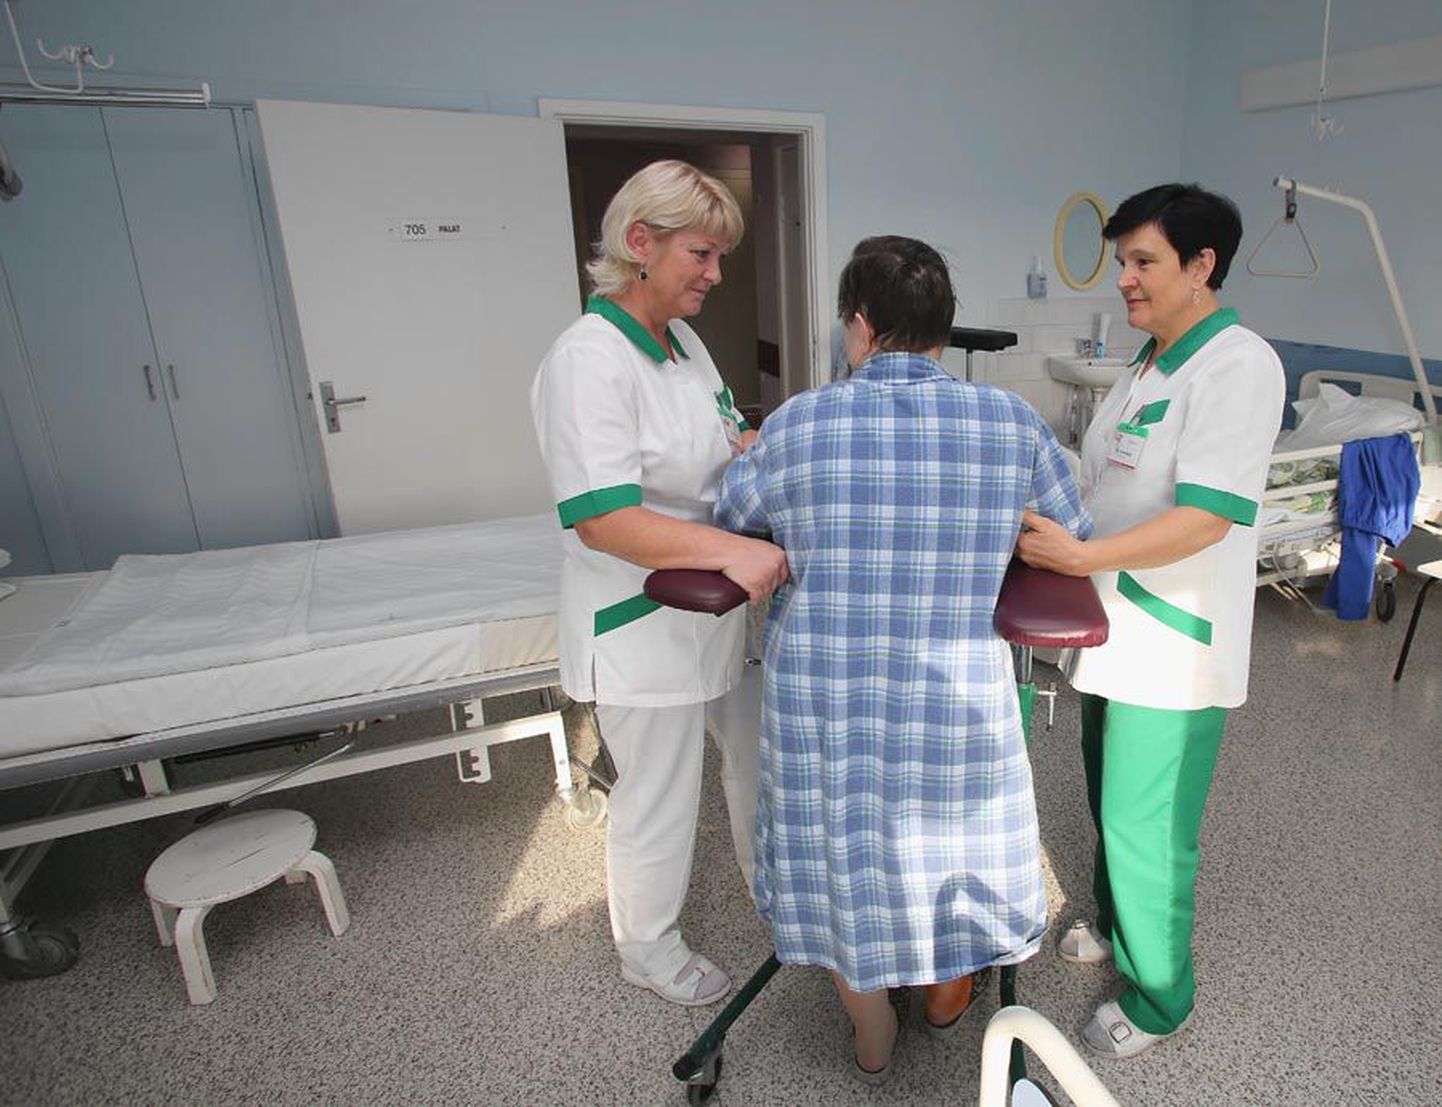 Kuigi palk on imeväike, tunnevad Ruth Männi (vasakul) ja Tiiu Vainonen oma tööst rõõmu. Suurimaks tasuks peavad nad patsientide siirast tänu.